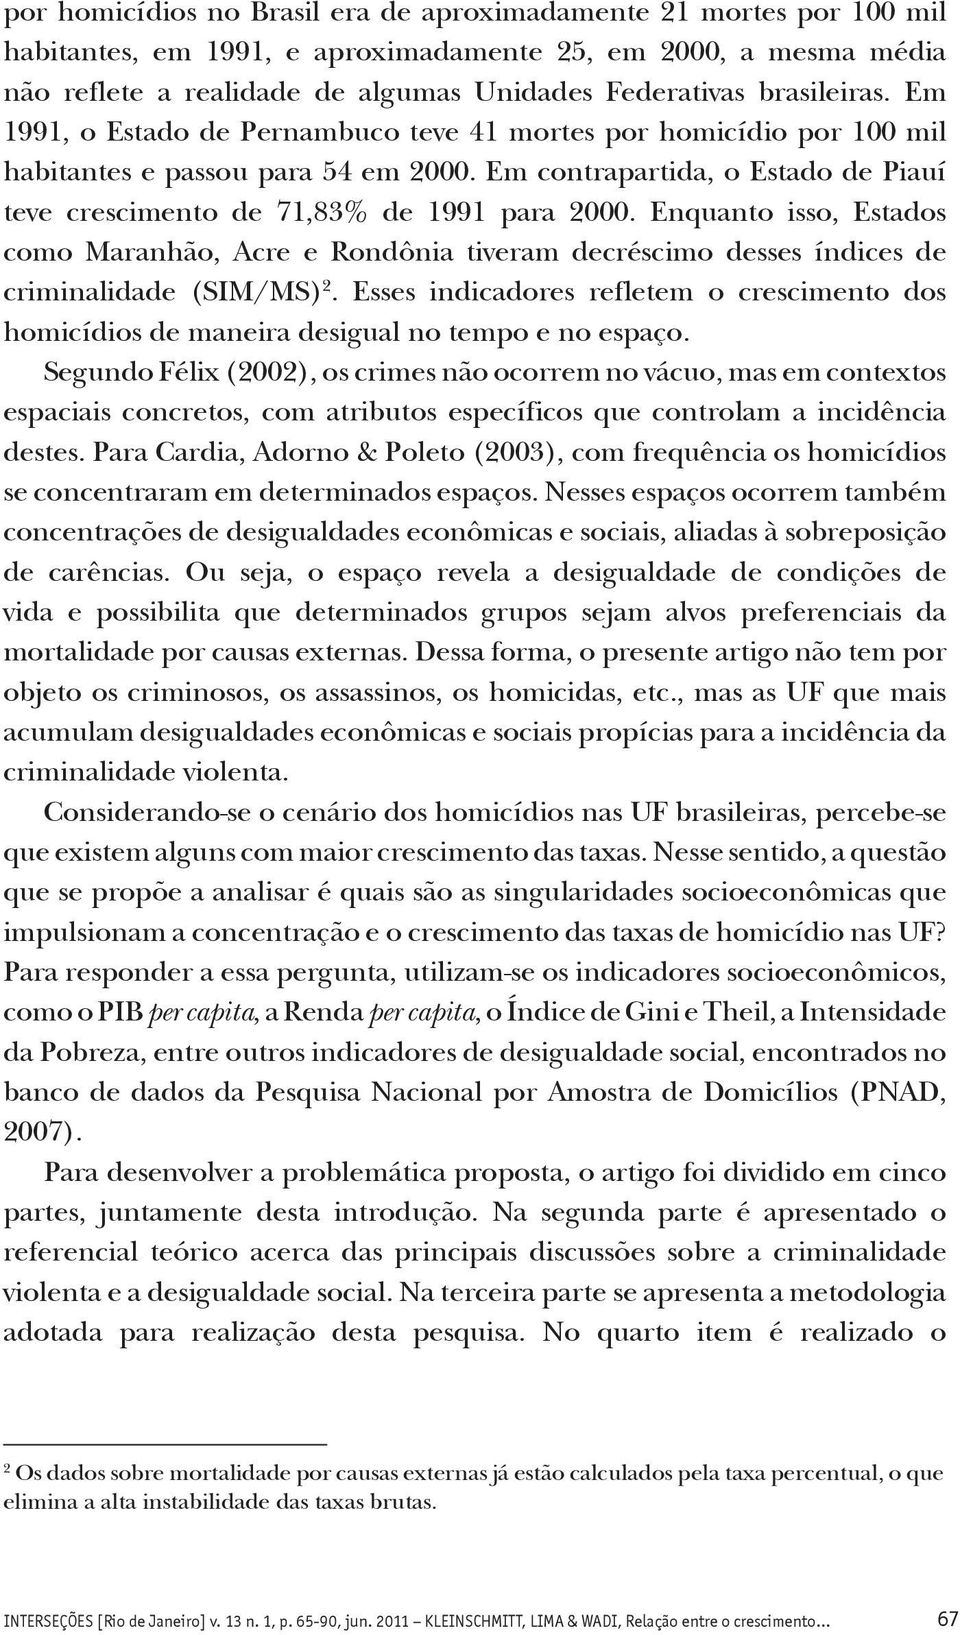 Em contrapartida, o Estado de Piauí teve crescimento de 71,83% de 1991 para 2000. Enquanto isso, Estados como Maranhão, Acre e Rondônia tiveram decréscimo desses índices de criminalidade (SIM/MS) 2.